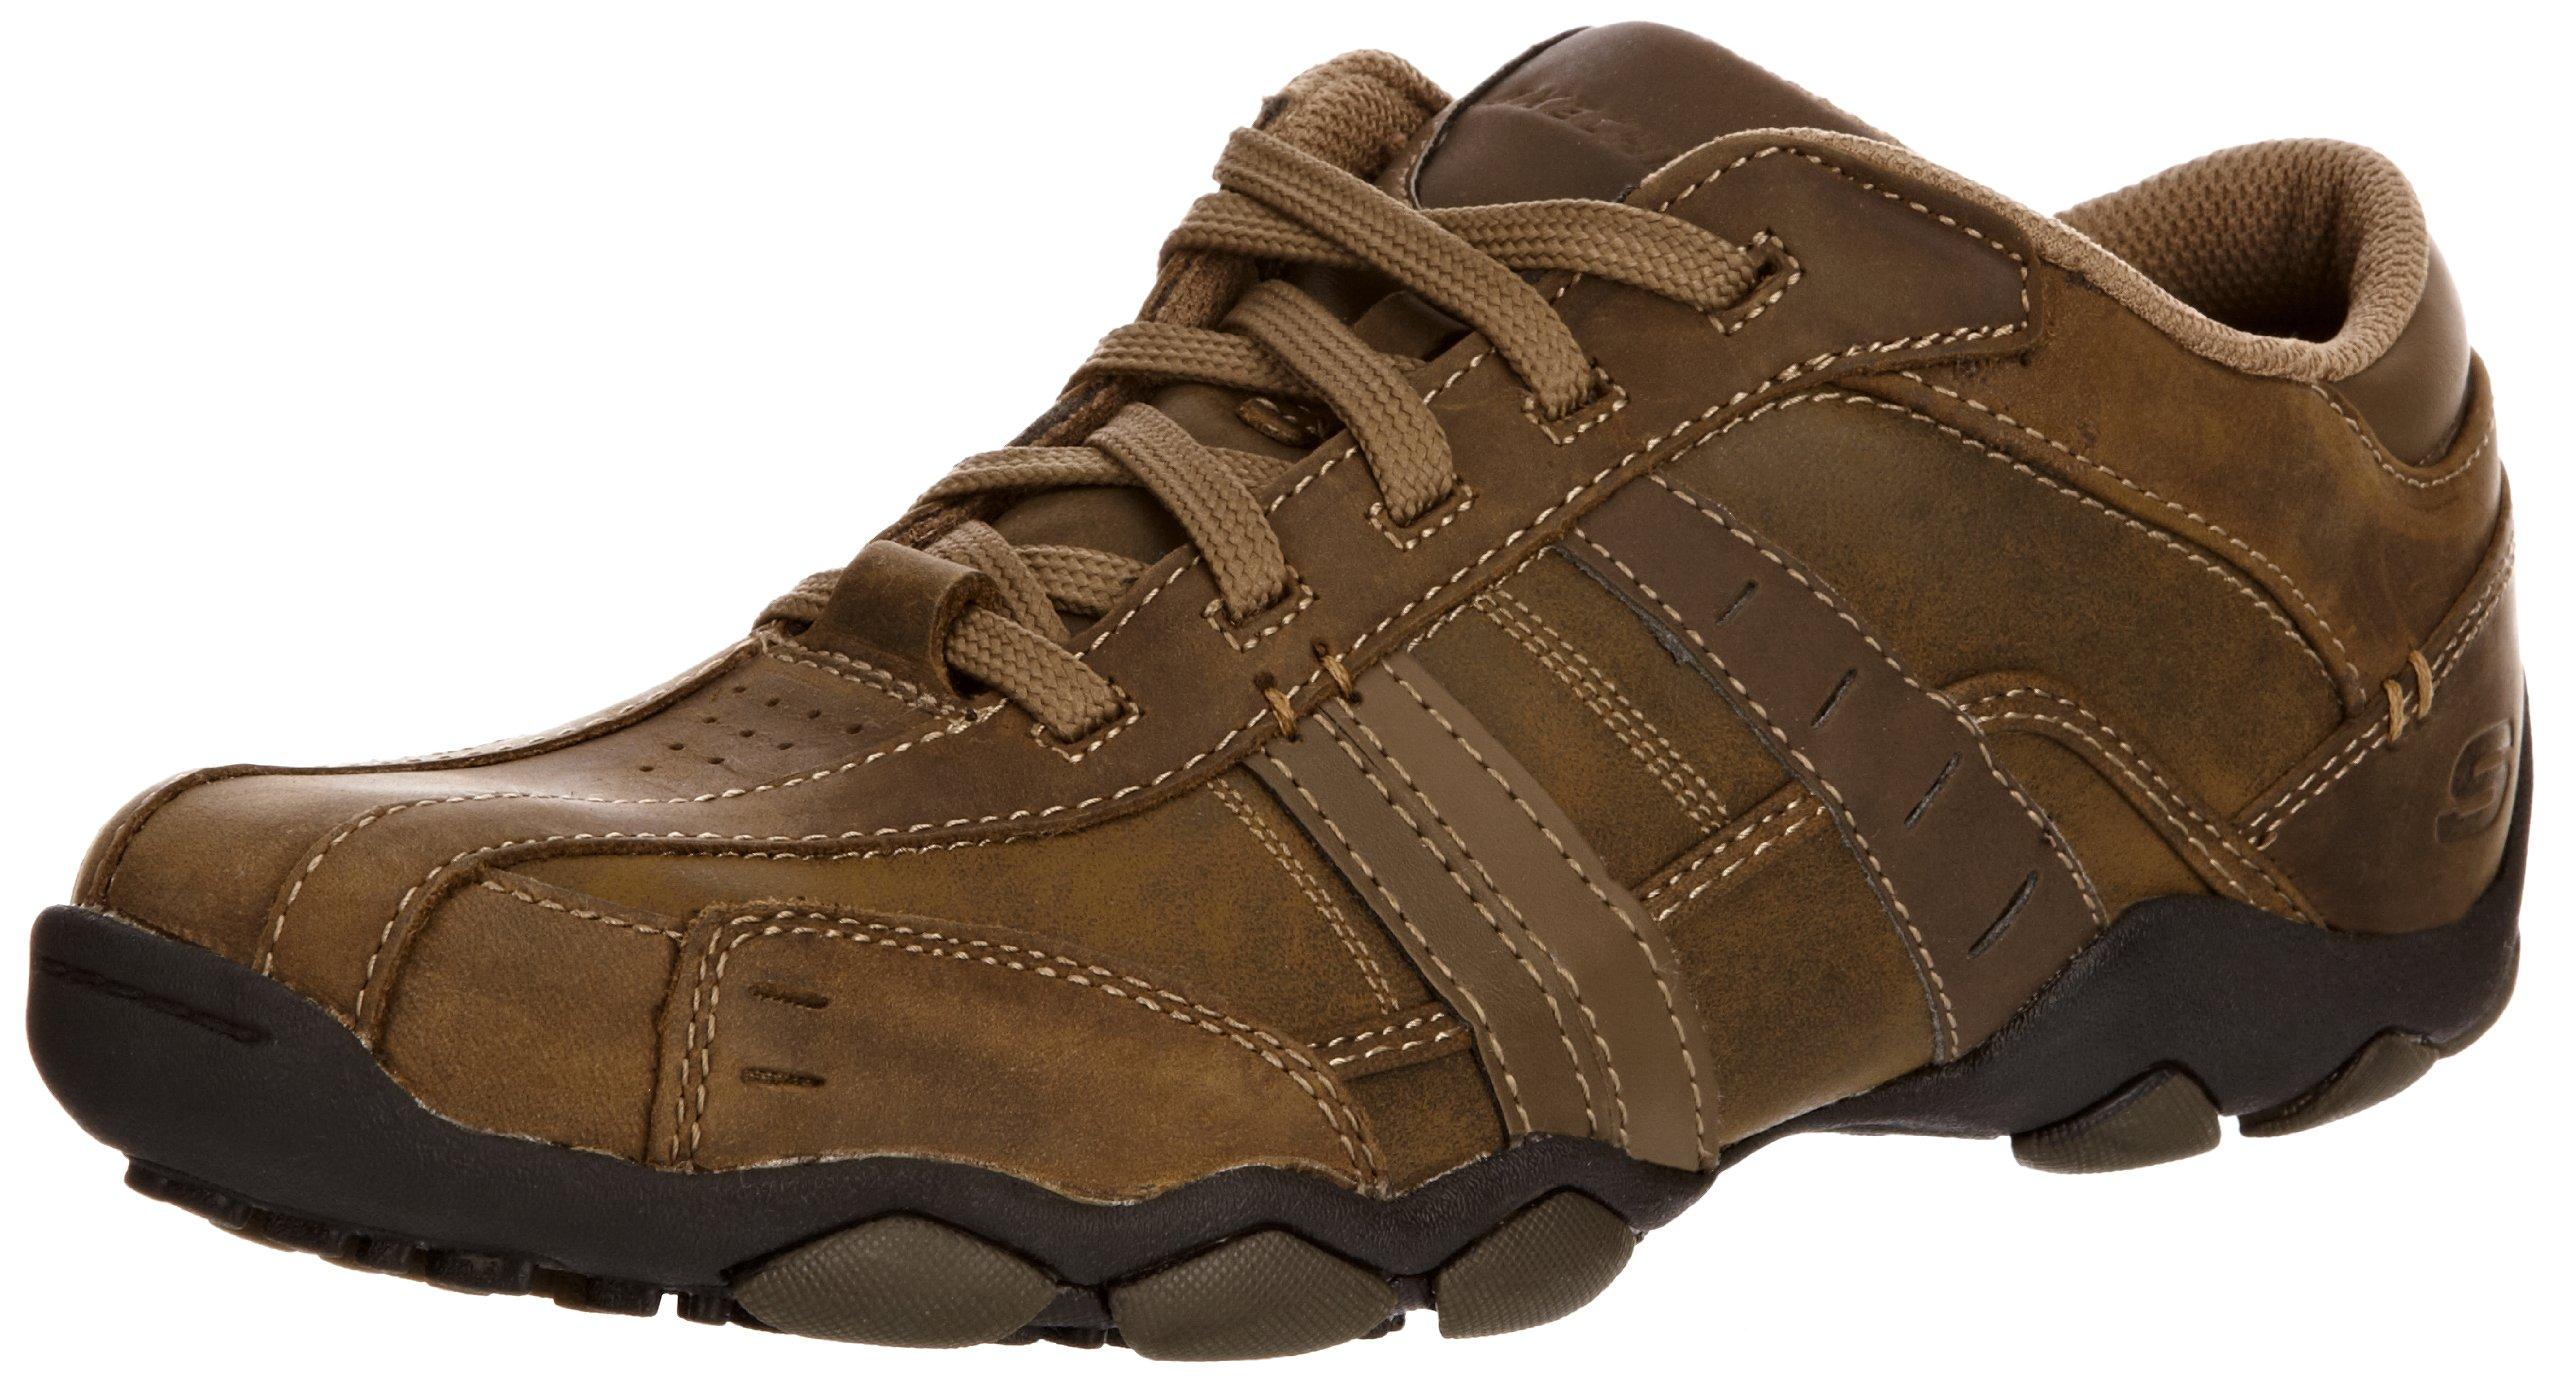 Skechers Leather Diameter-vassell, Shoes, Brown -7 Uk (41 Eu) for Men ...